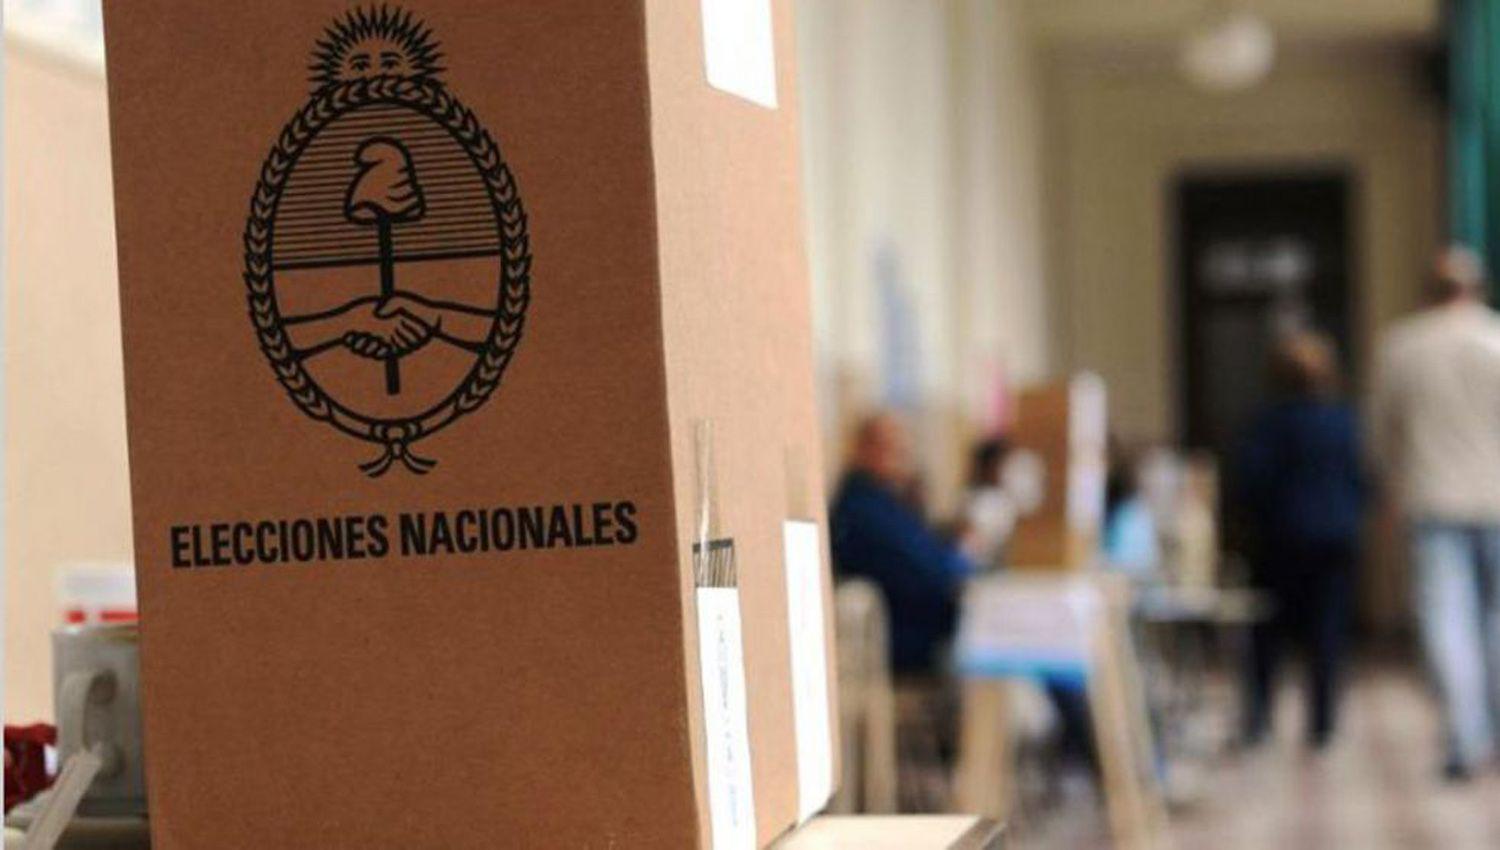 Elecciones provinciales- salvo la postulacioacuten de un comisionado todas las candidaturas fueron oficializadas